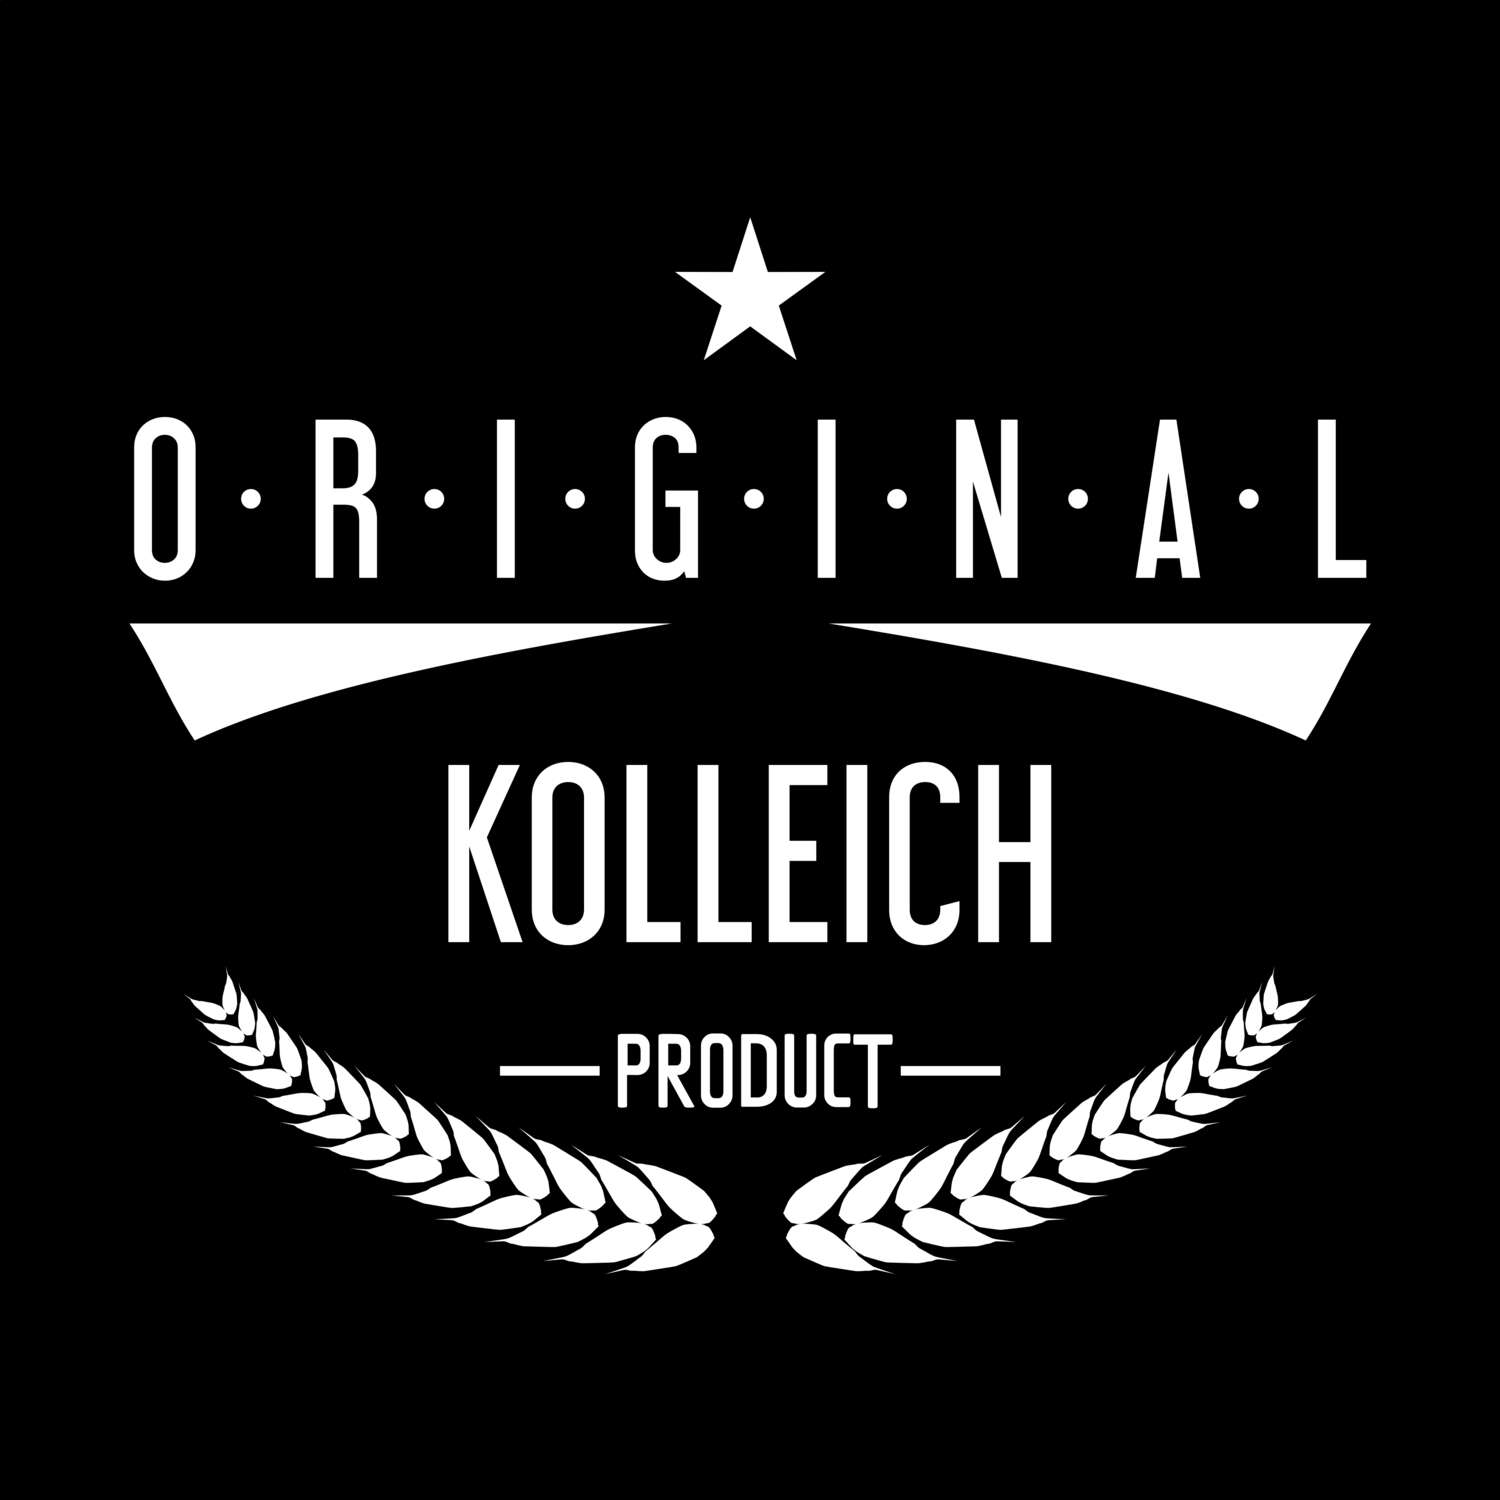 Kolleich T-Shirt »Original Product«